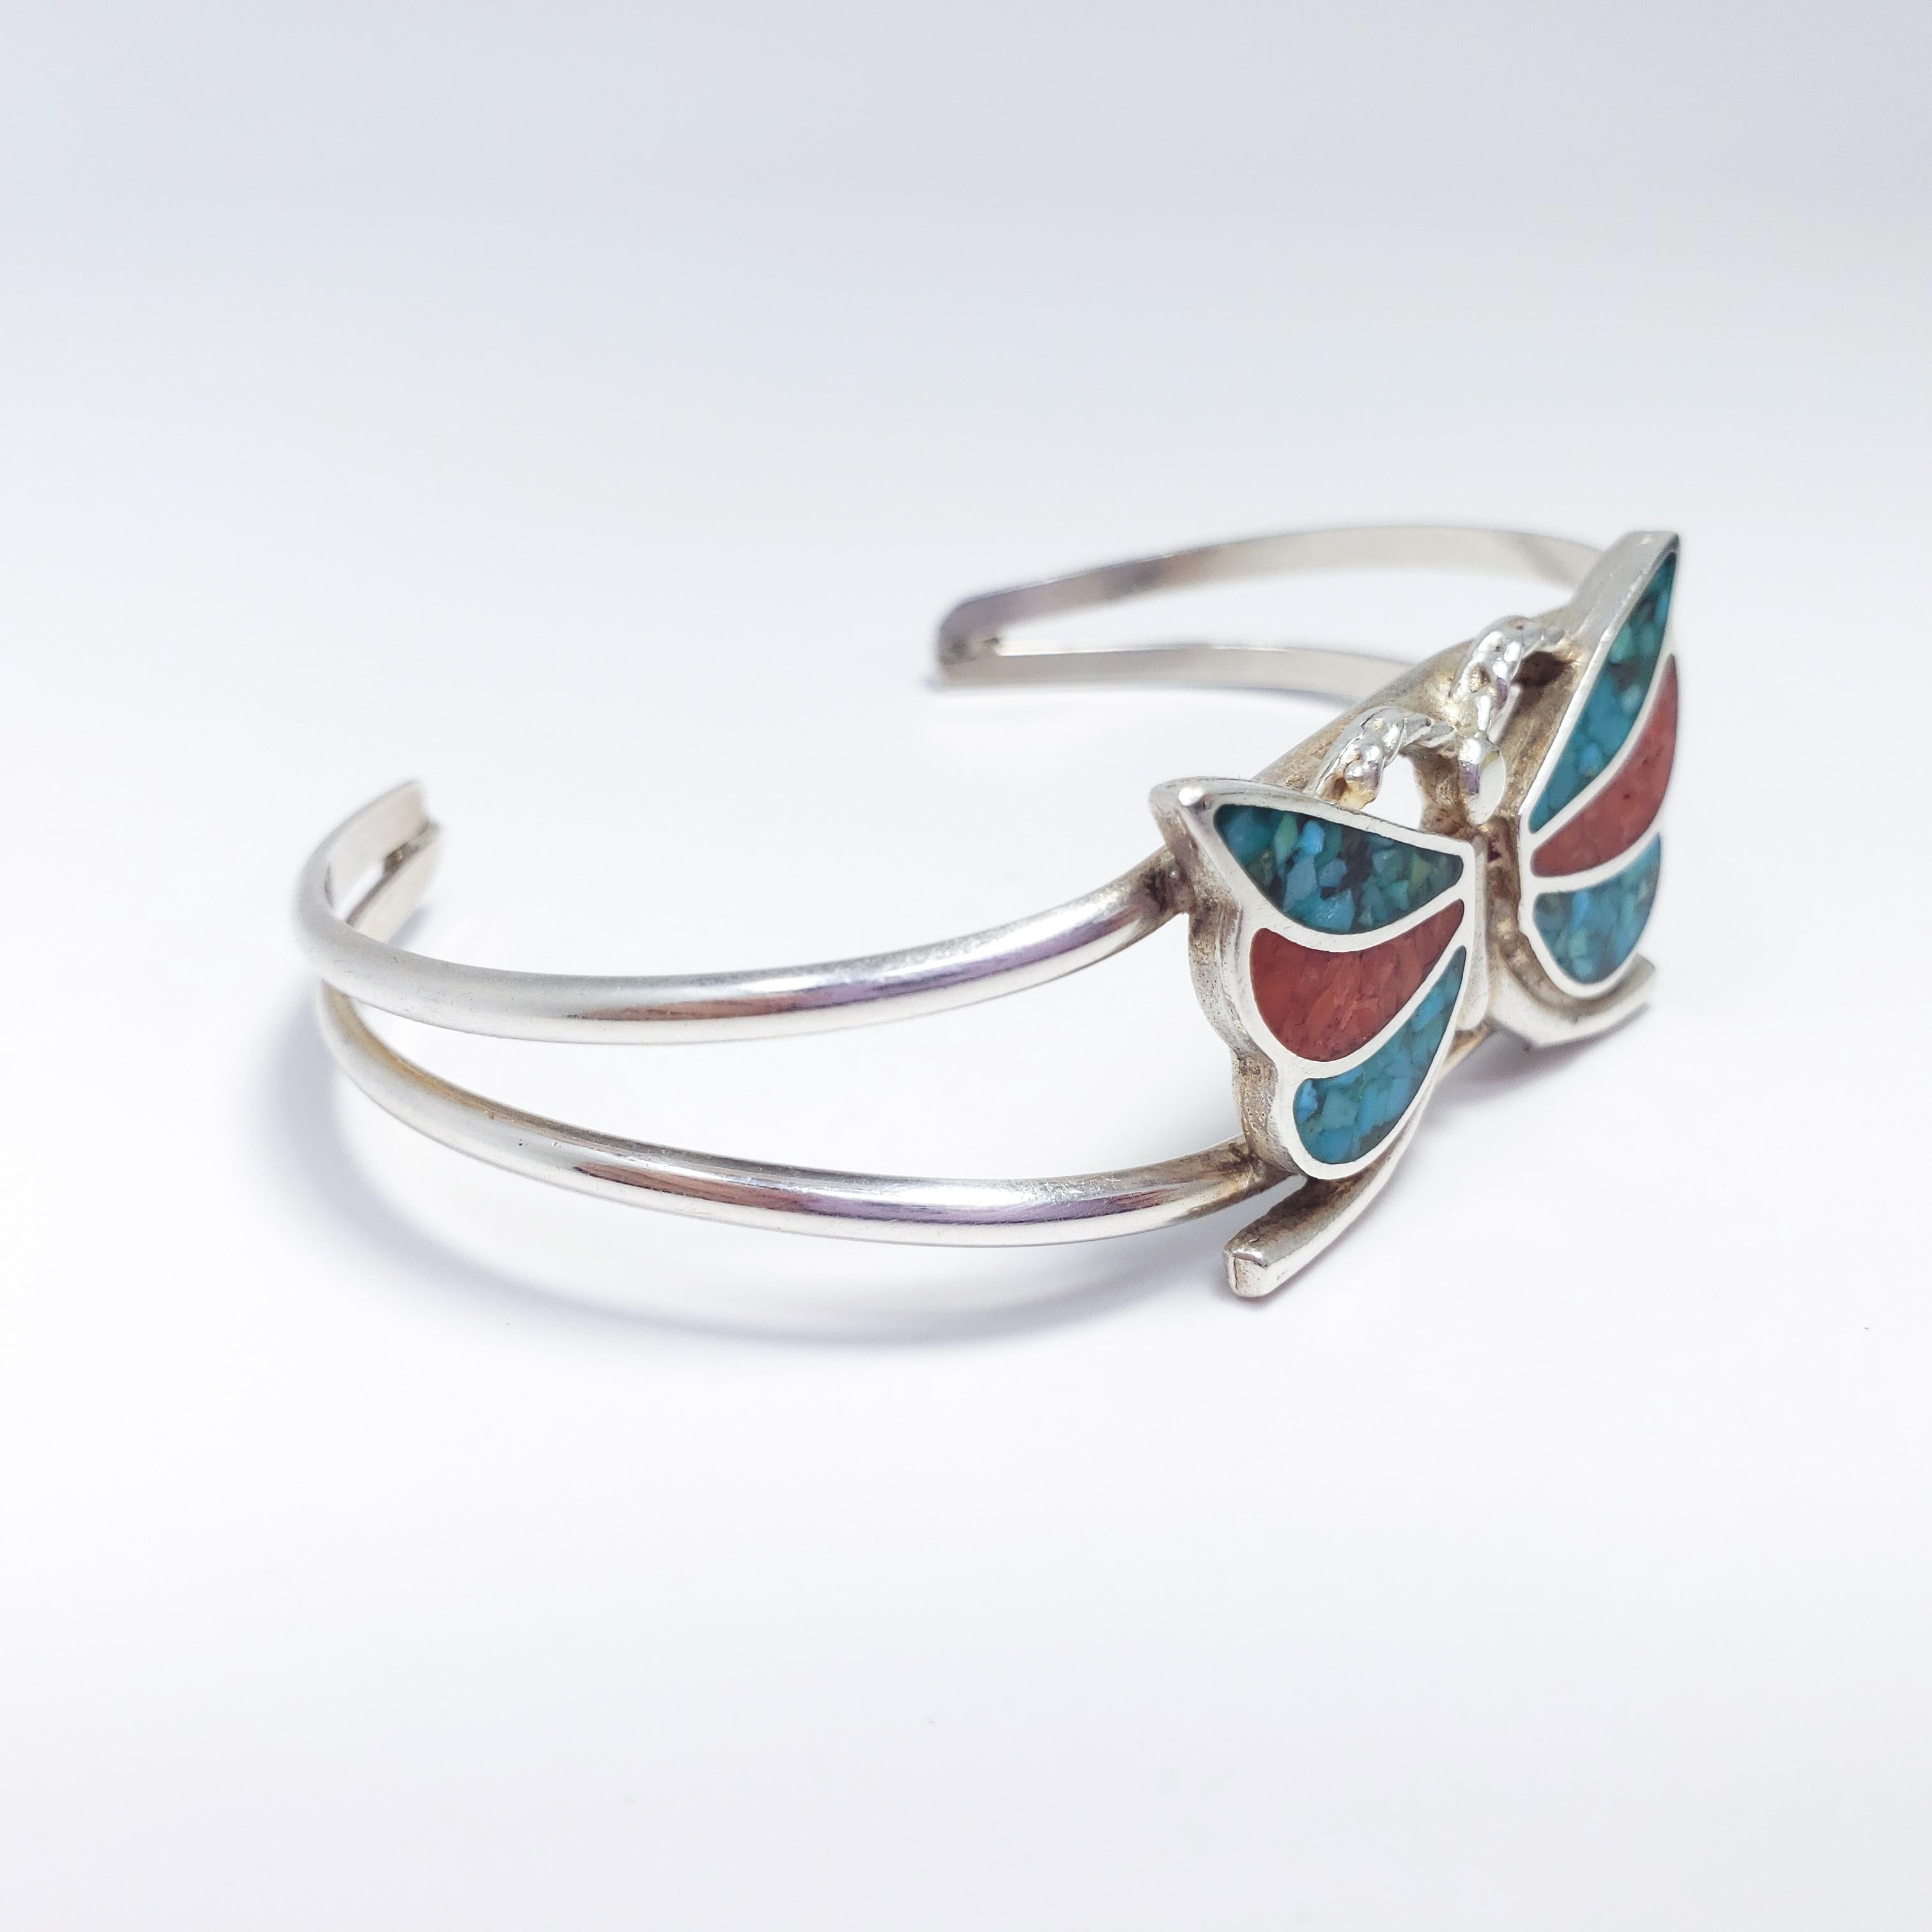 Ein indianisches Zuni-Armband aus den frühen bis mittleren 1900er Jahren. Diese stilvolle Manschette aus Sterlingsilber zeigt ein Schmetterlingsmotiv mit Flügeln aus Türkis und Koralle. Außergewöhnliche, minimalistische Zuni-Handwerkskunst! Innerer